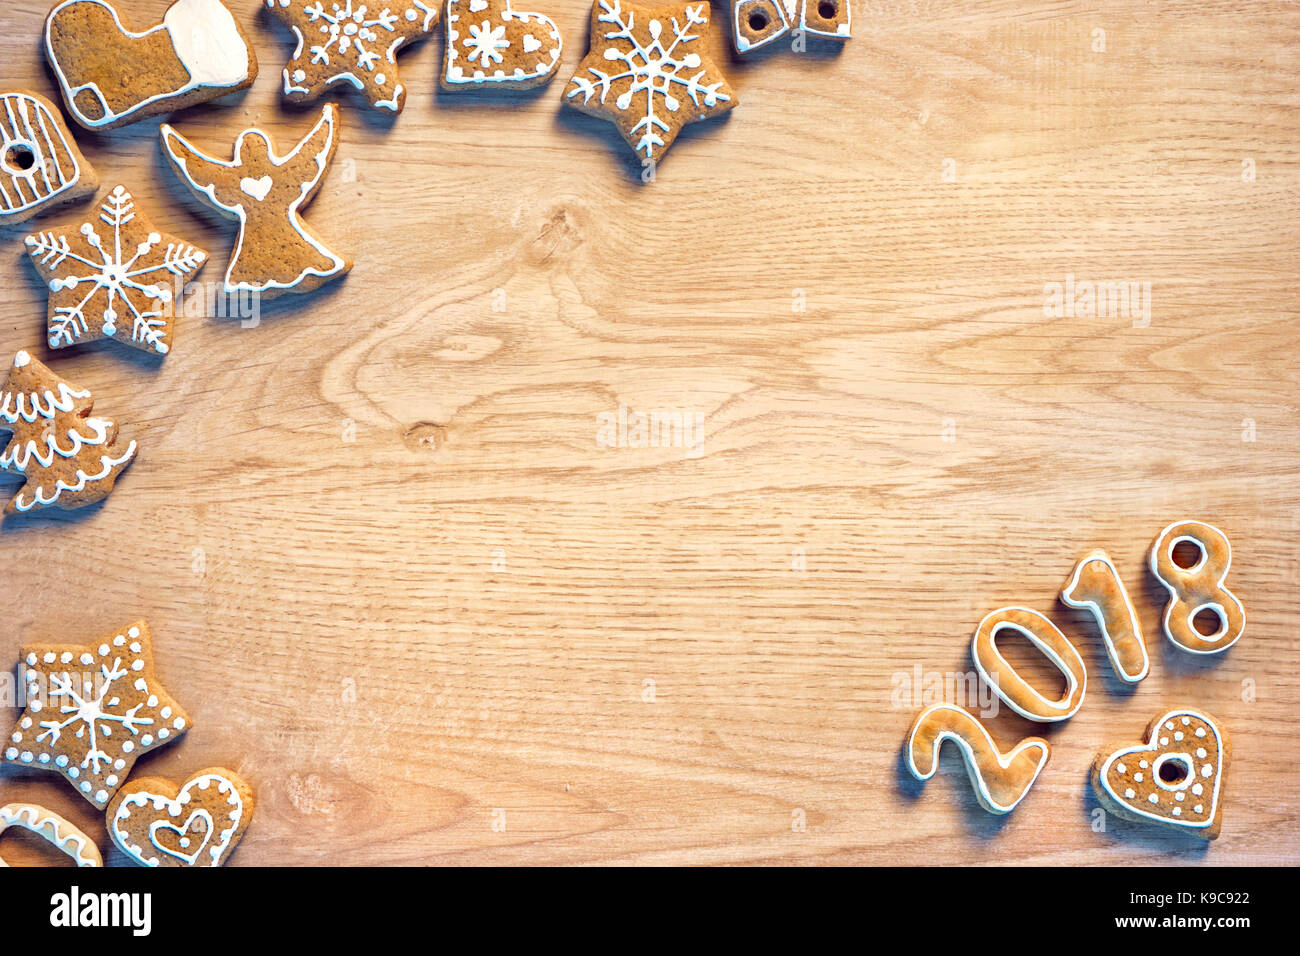 Traditionelle Weihnachtsplätzchen auf hölzernen Tisch. Ansicht von oben. Hochauflösende Produkt. Weihnachten backen Konzept Stockfoto